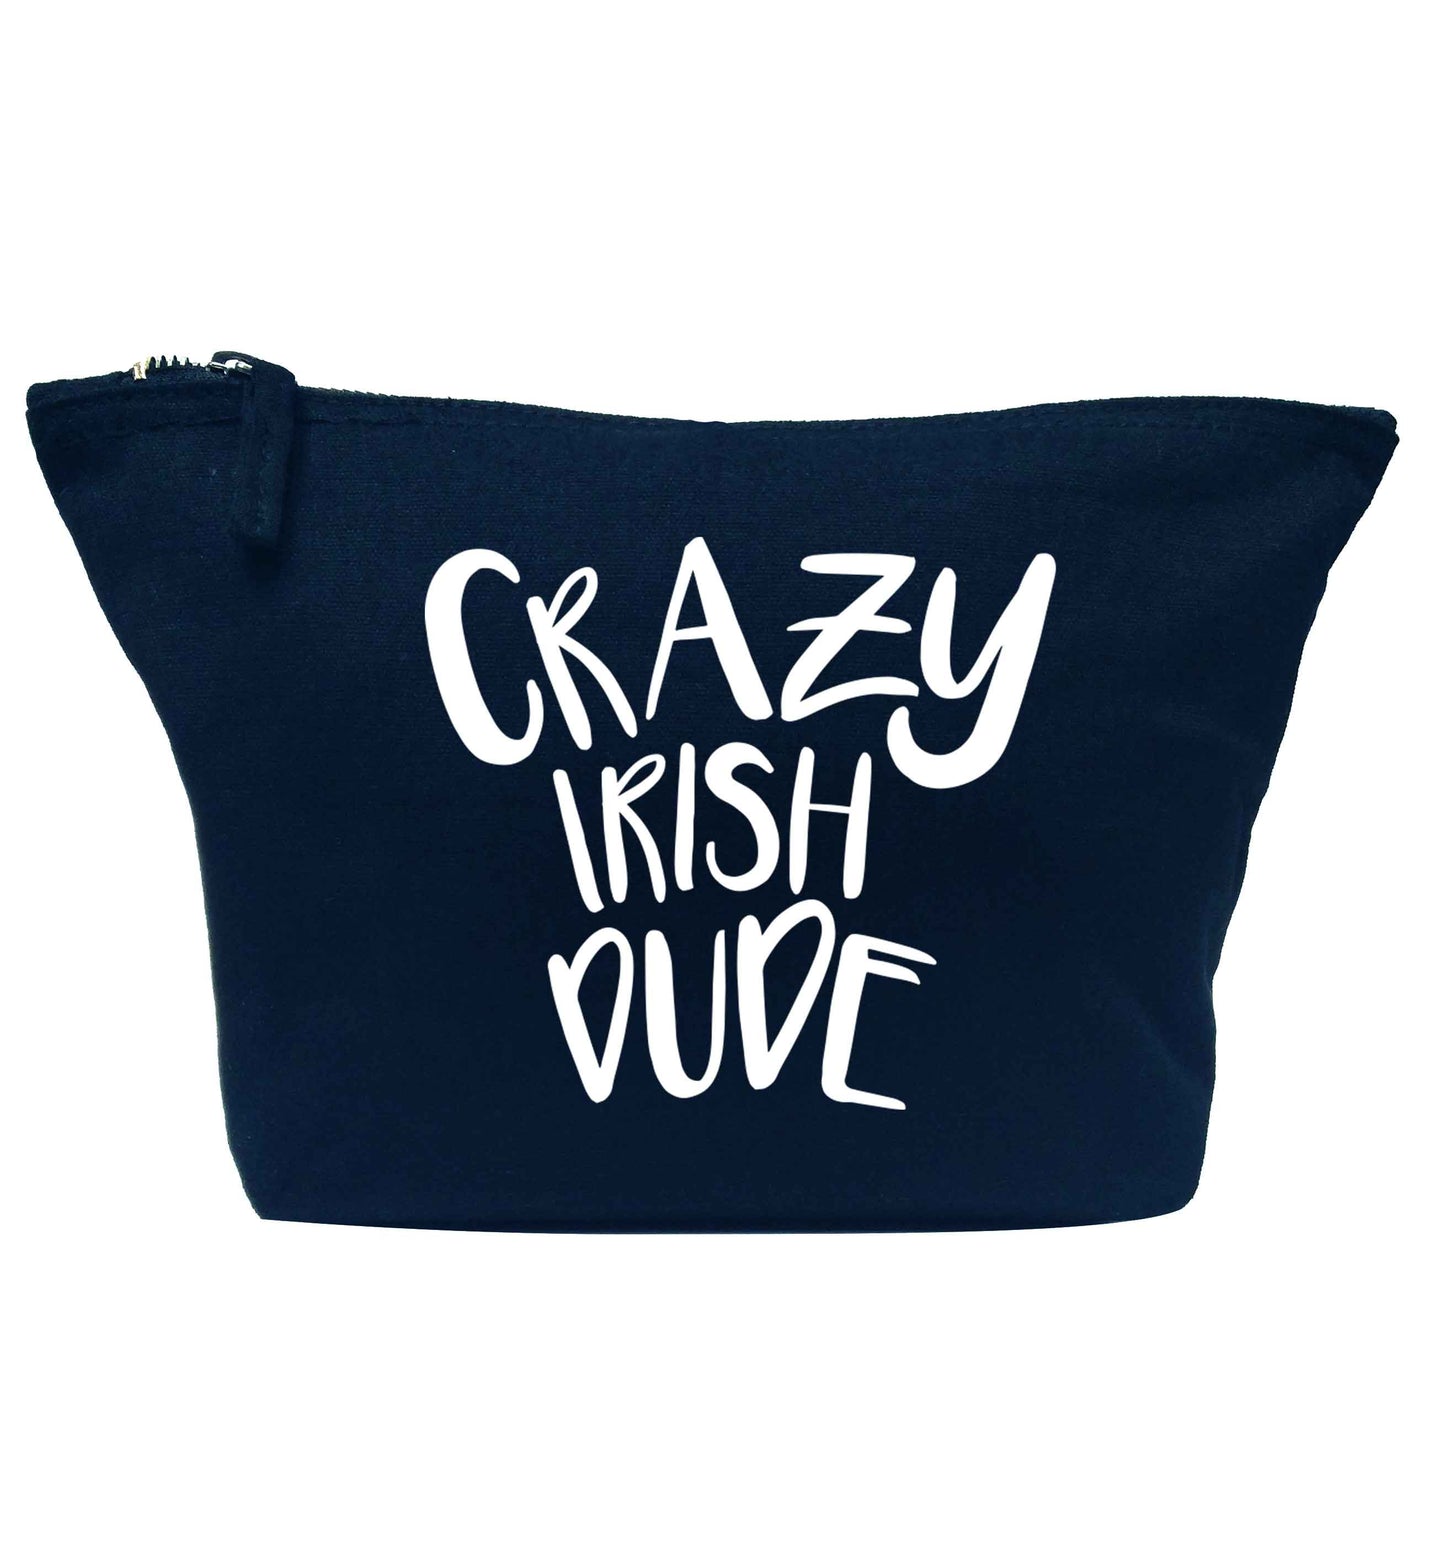 Crazy Irish dude navy makeup bag